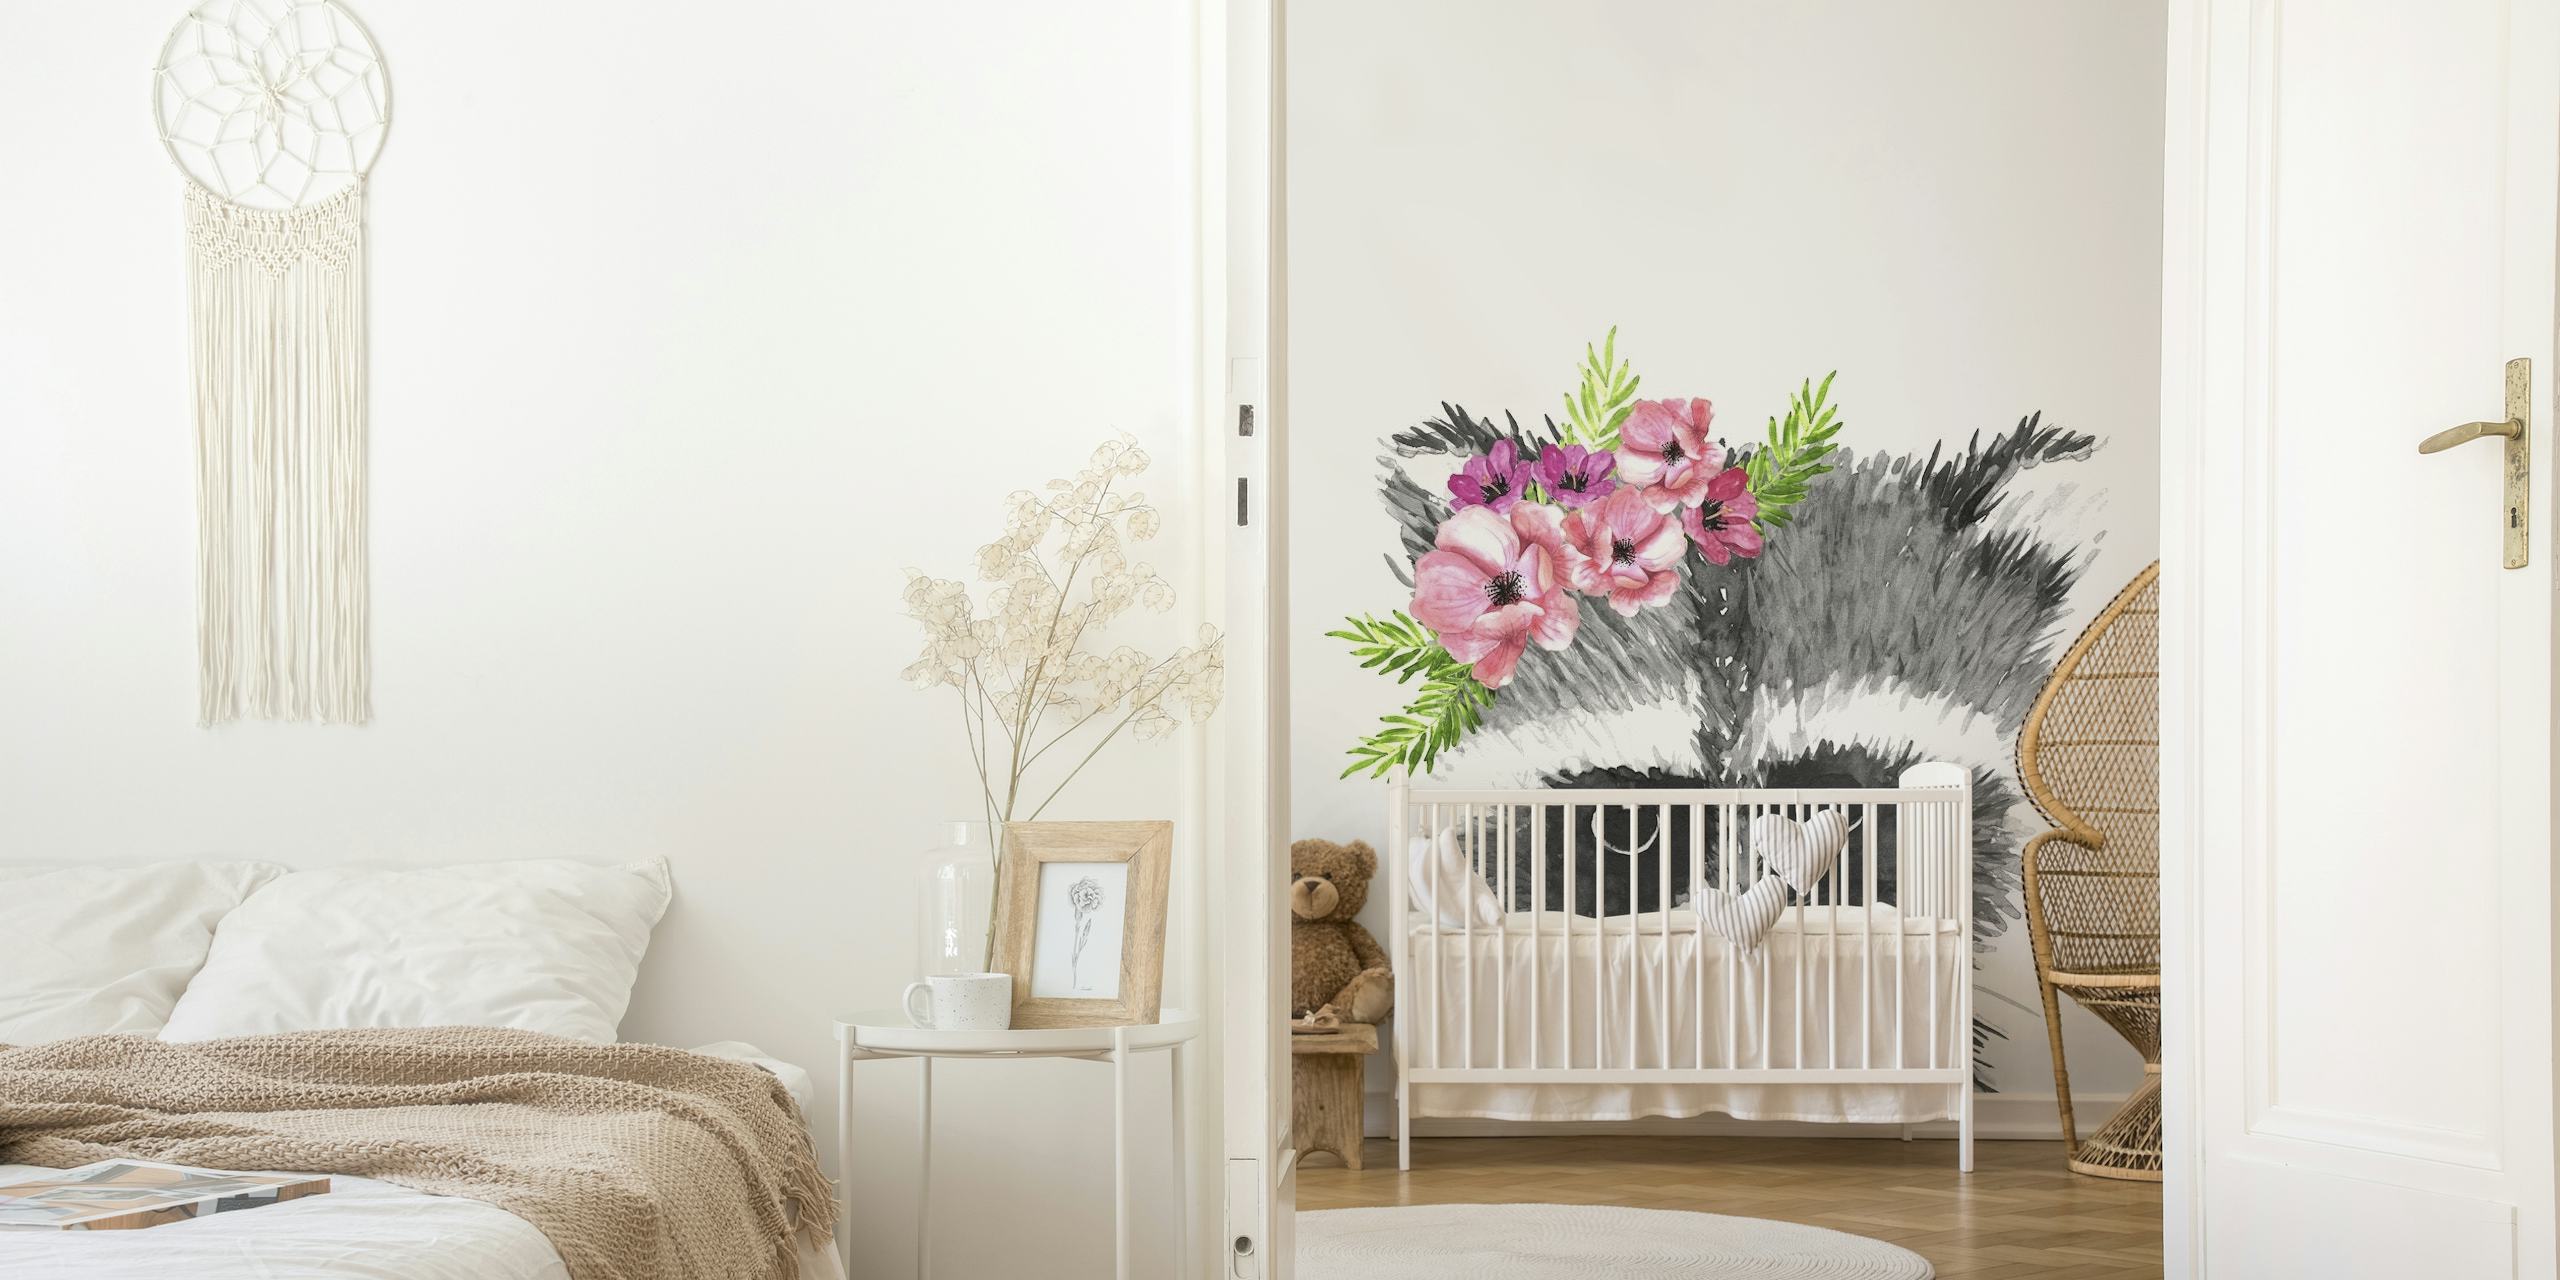 Ručno nacrtani rakun s krunom ružičastog cvijeta zidna slika